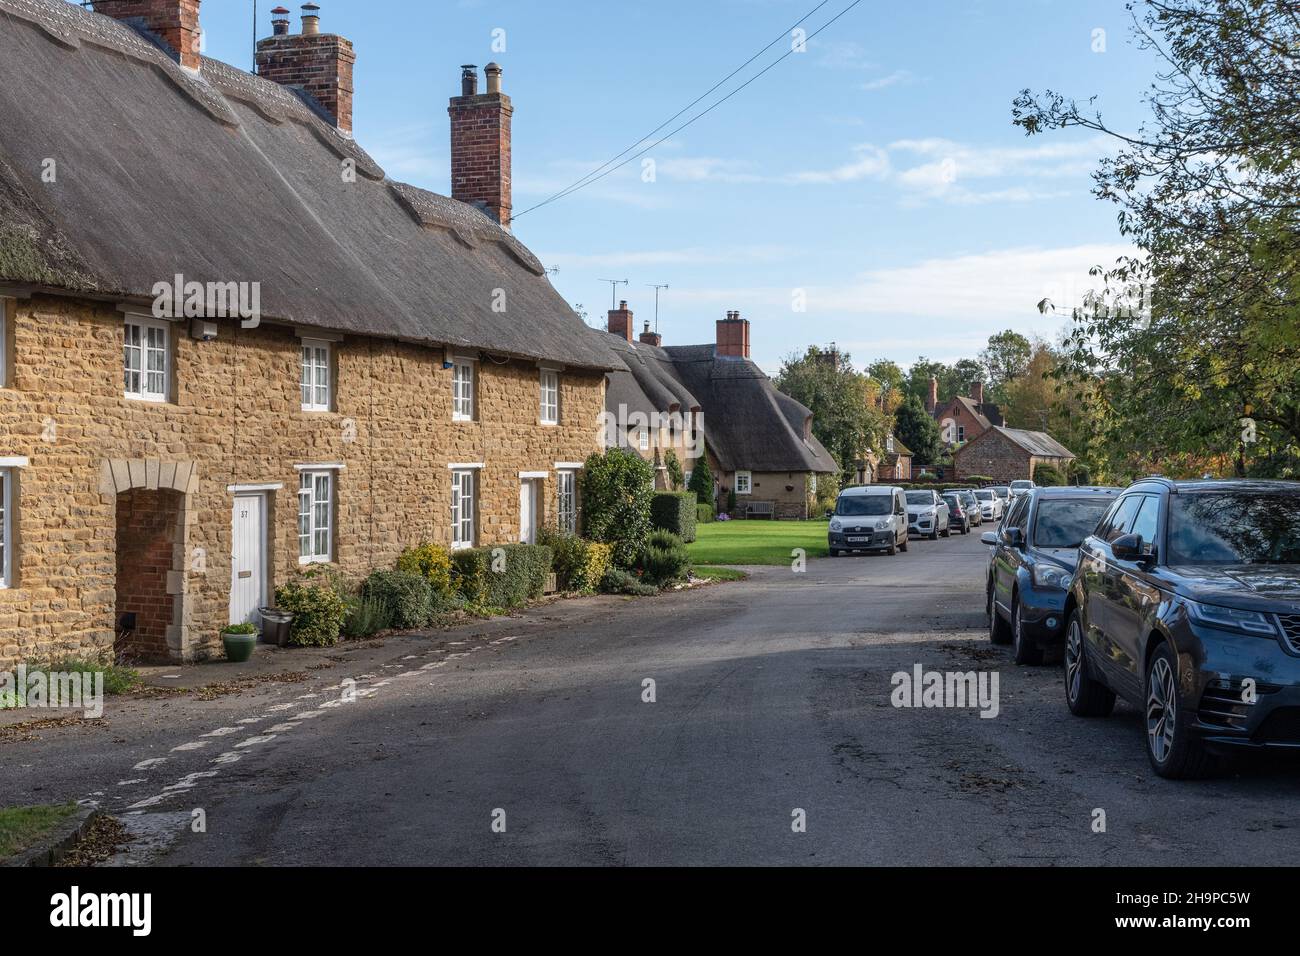 Scena stradale, con case di paglia, nel grazioso villaggio di Ashby St Ledgers, Northamptonshire, Regno Unito Foto Stock